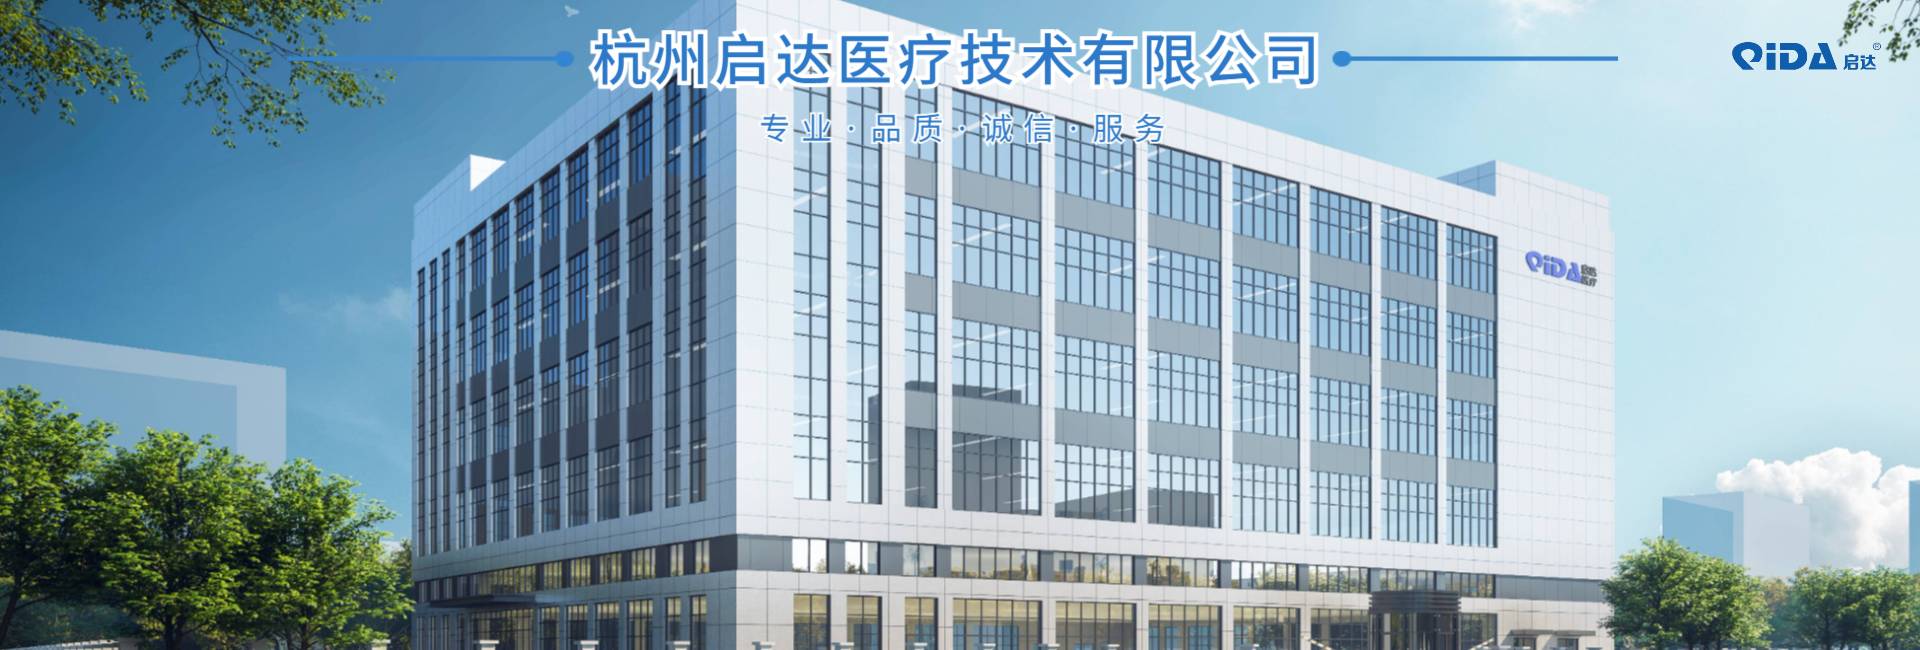 杭州启达医疗技术有限公司公司介绍